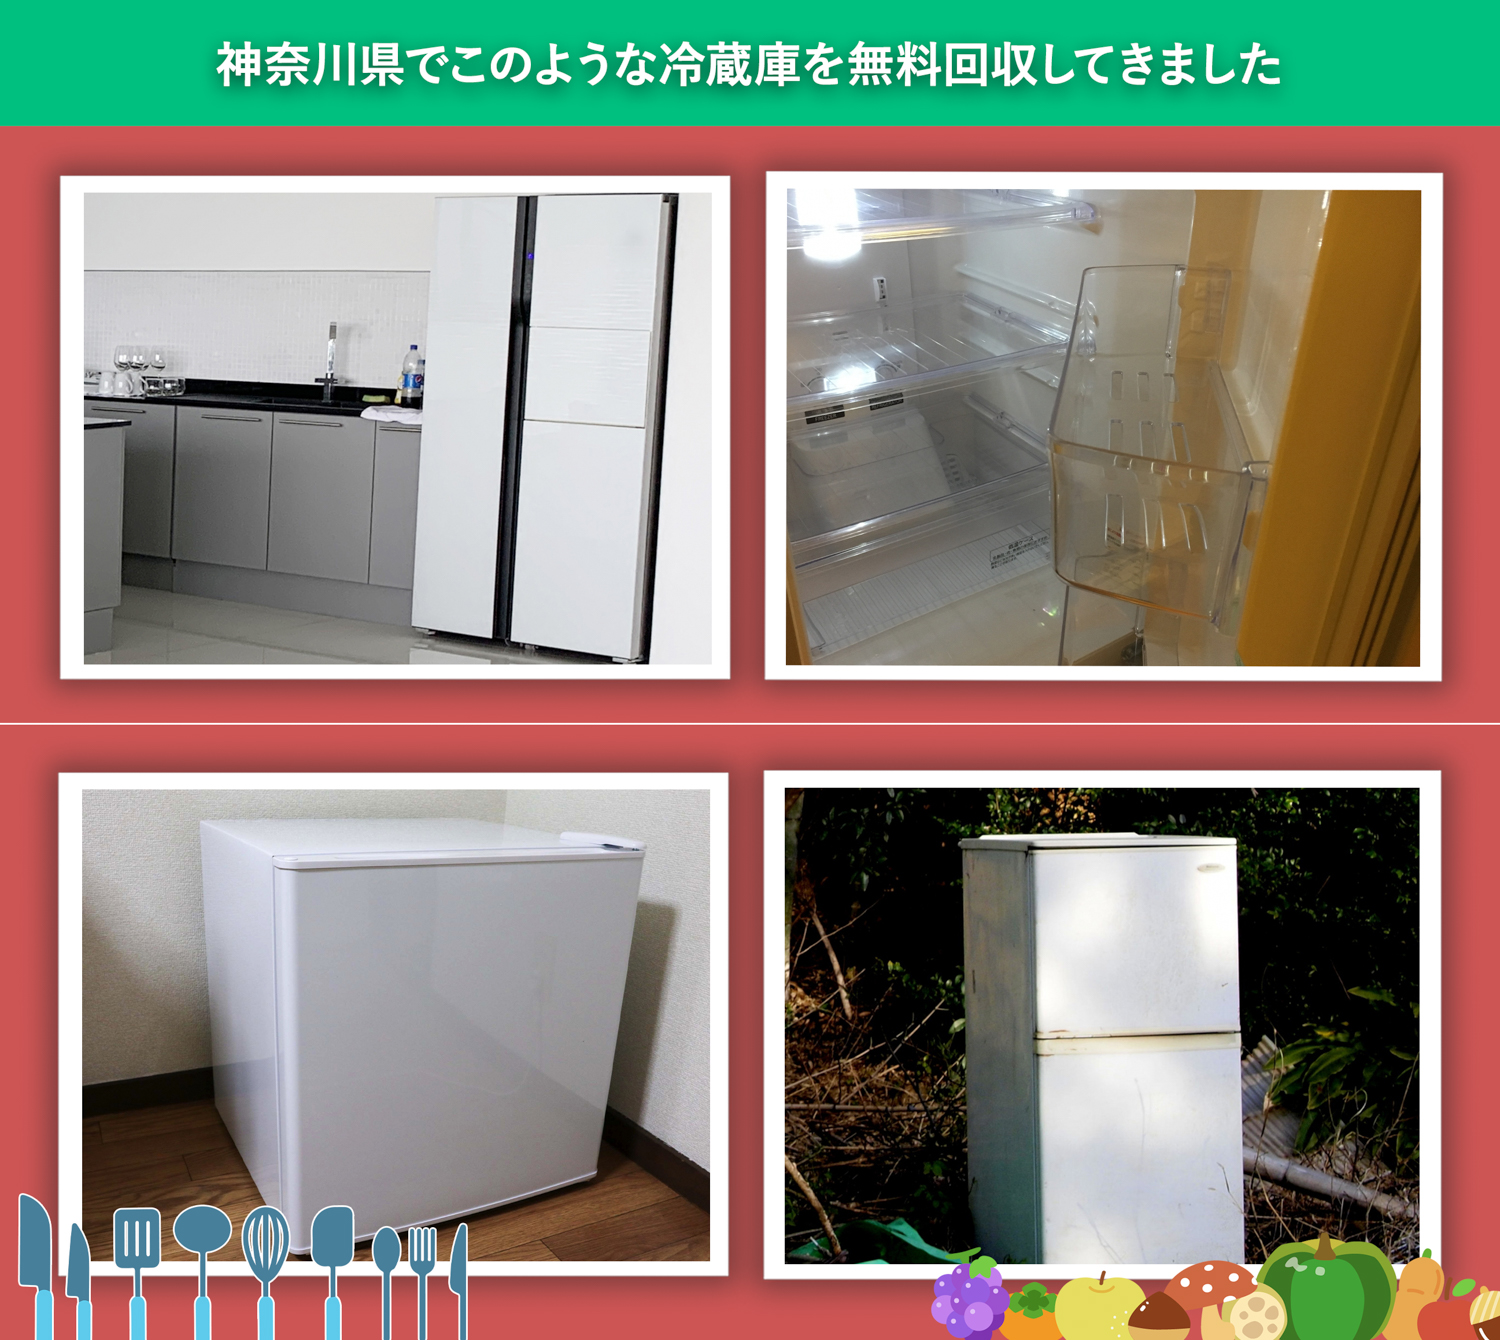 神奈川県でこのような冷蔵庫を無料回収してきました。